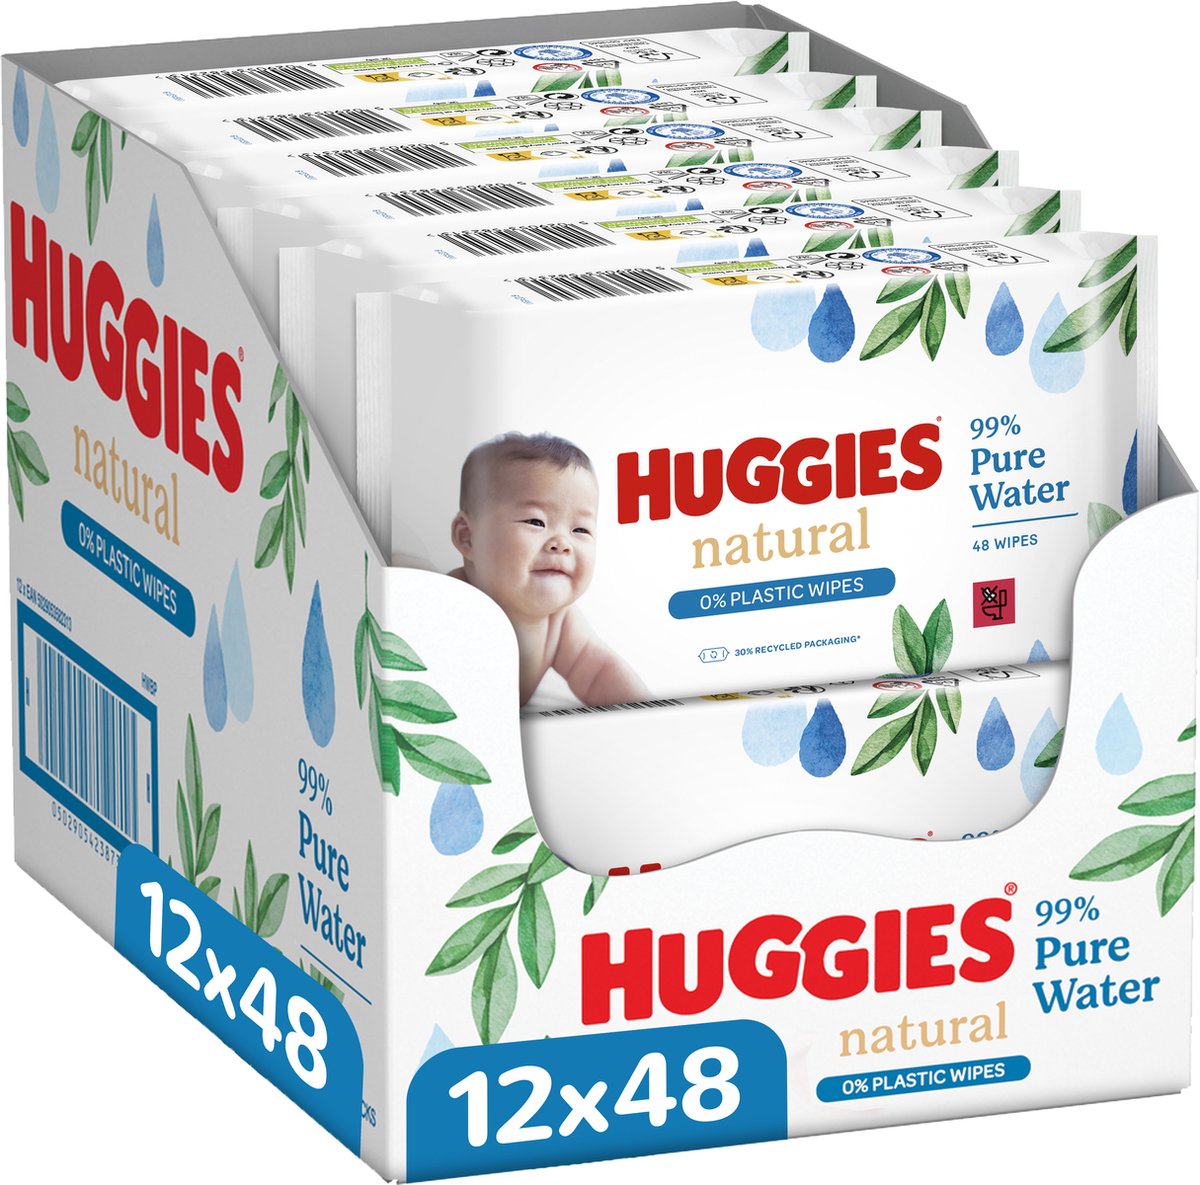 Huggies billendoekjes - Natural 0% plastic - 12 x 48 stuks - 576 doekjes - Huggies